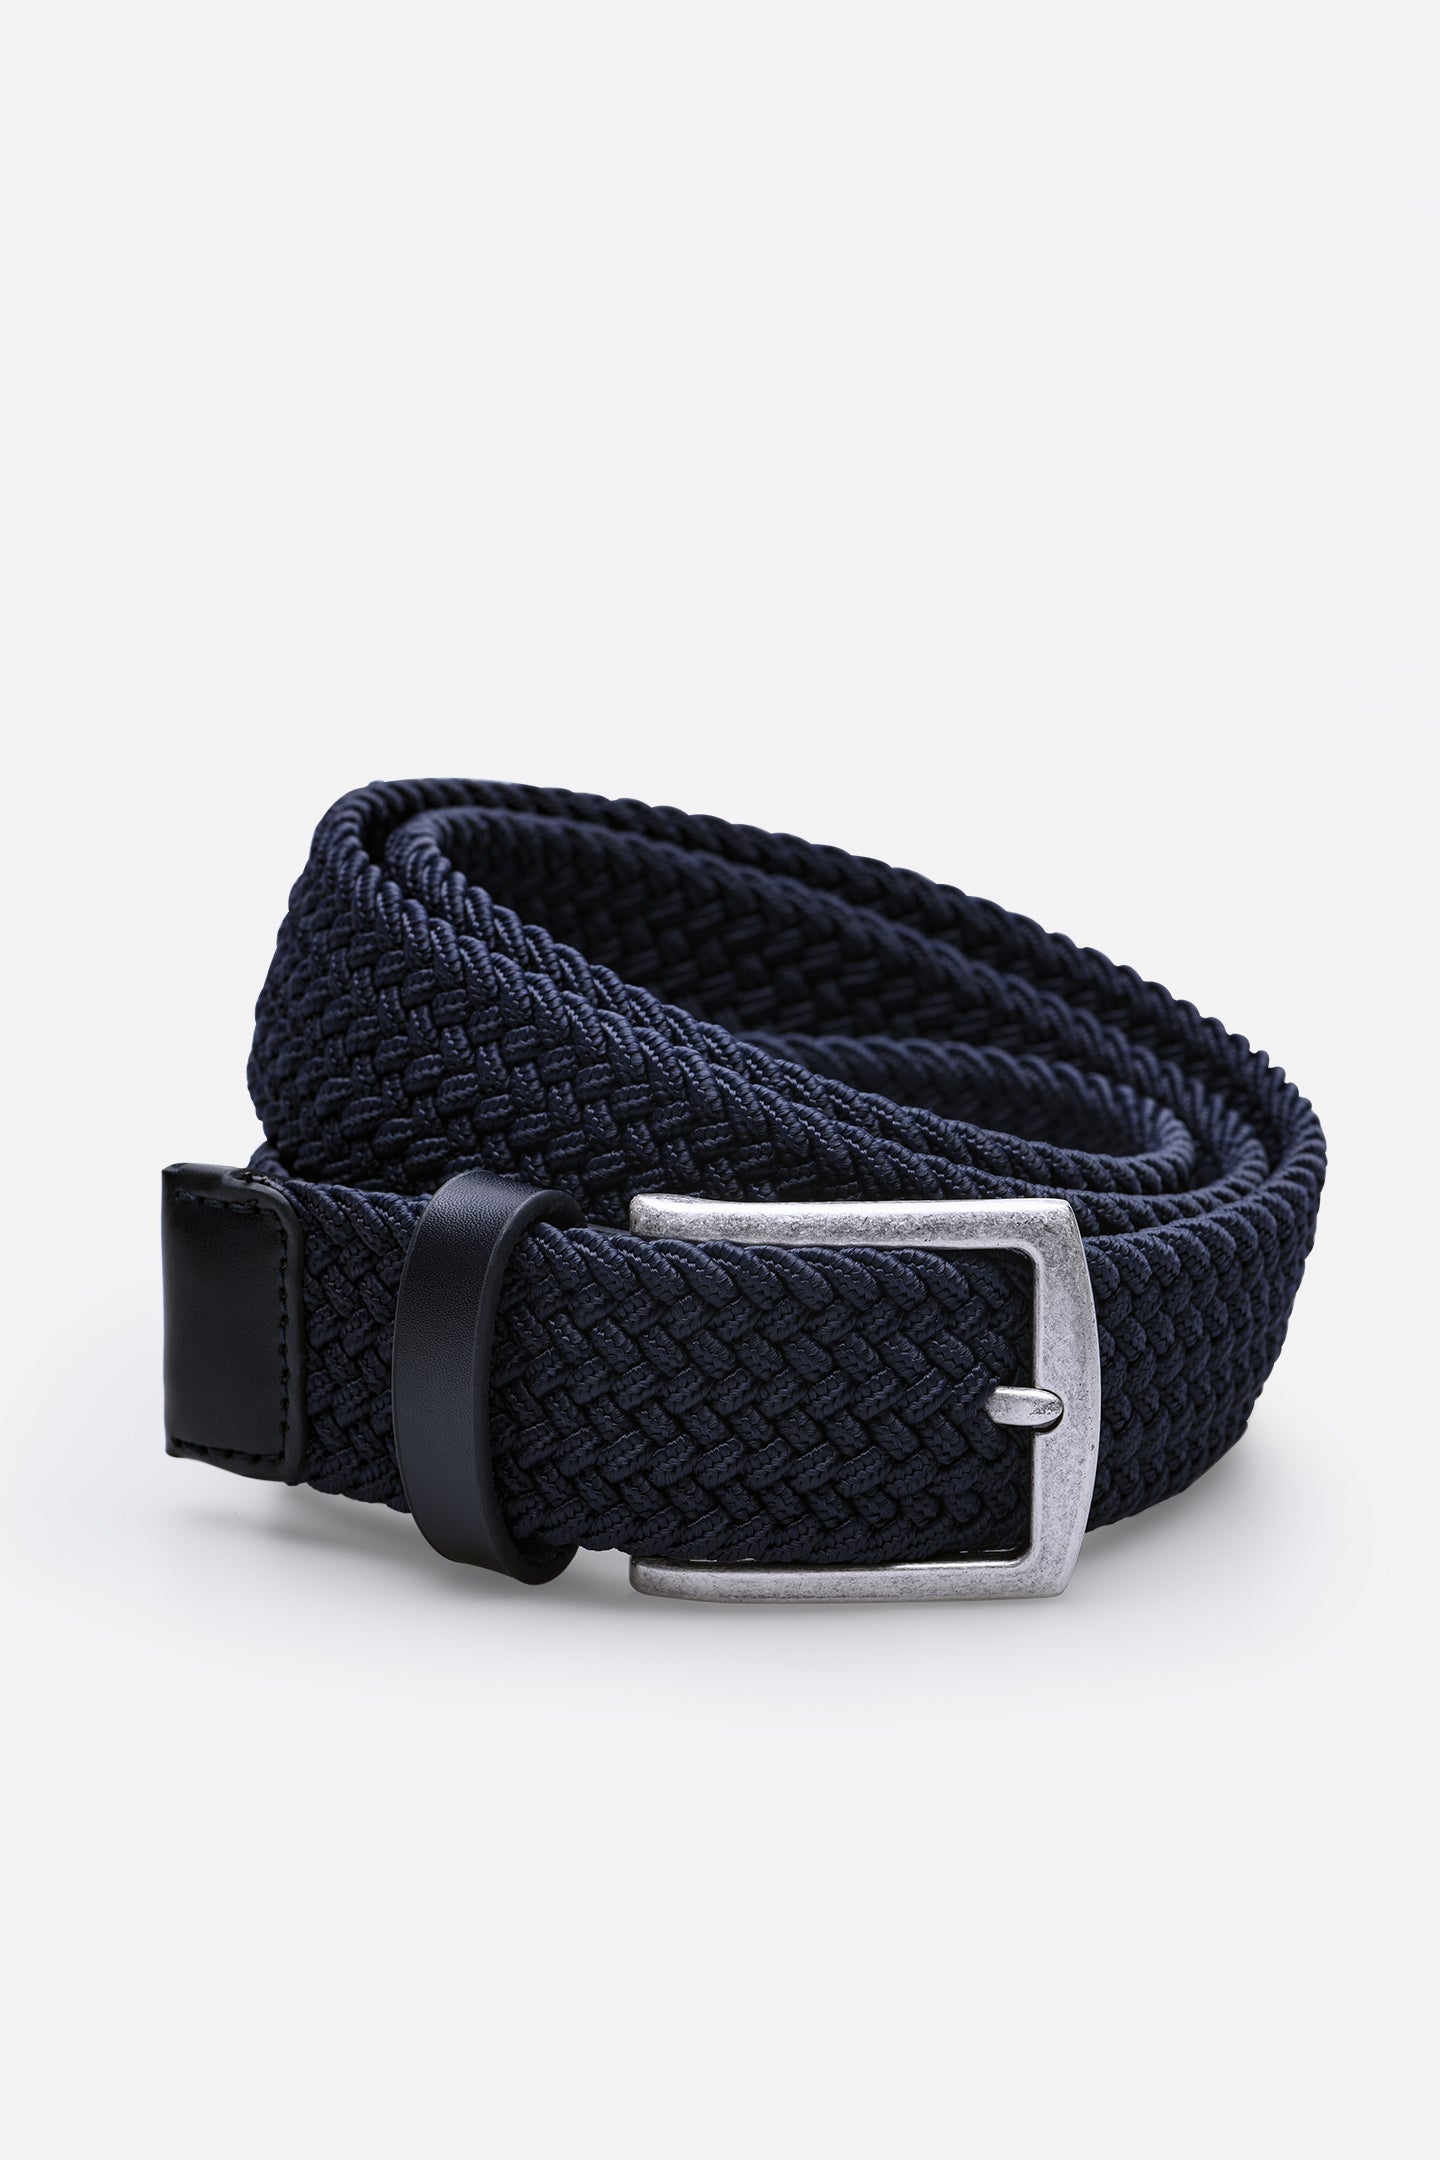 Designer Belts for Men | Aspinal of London